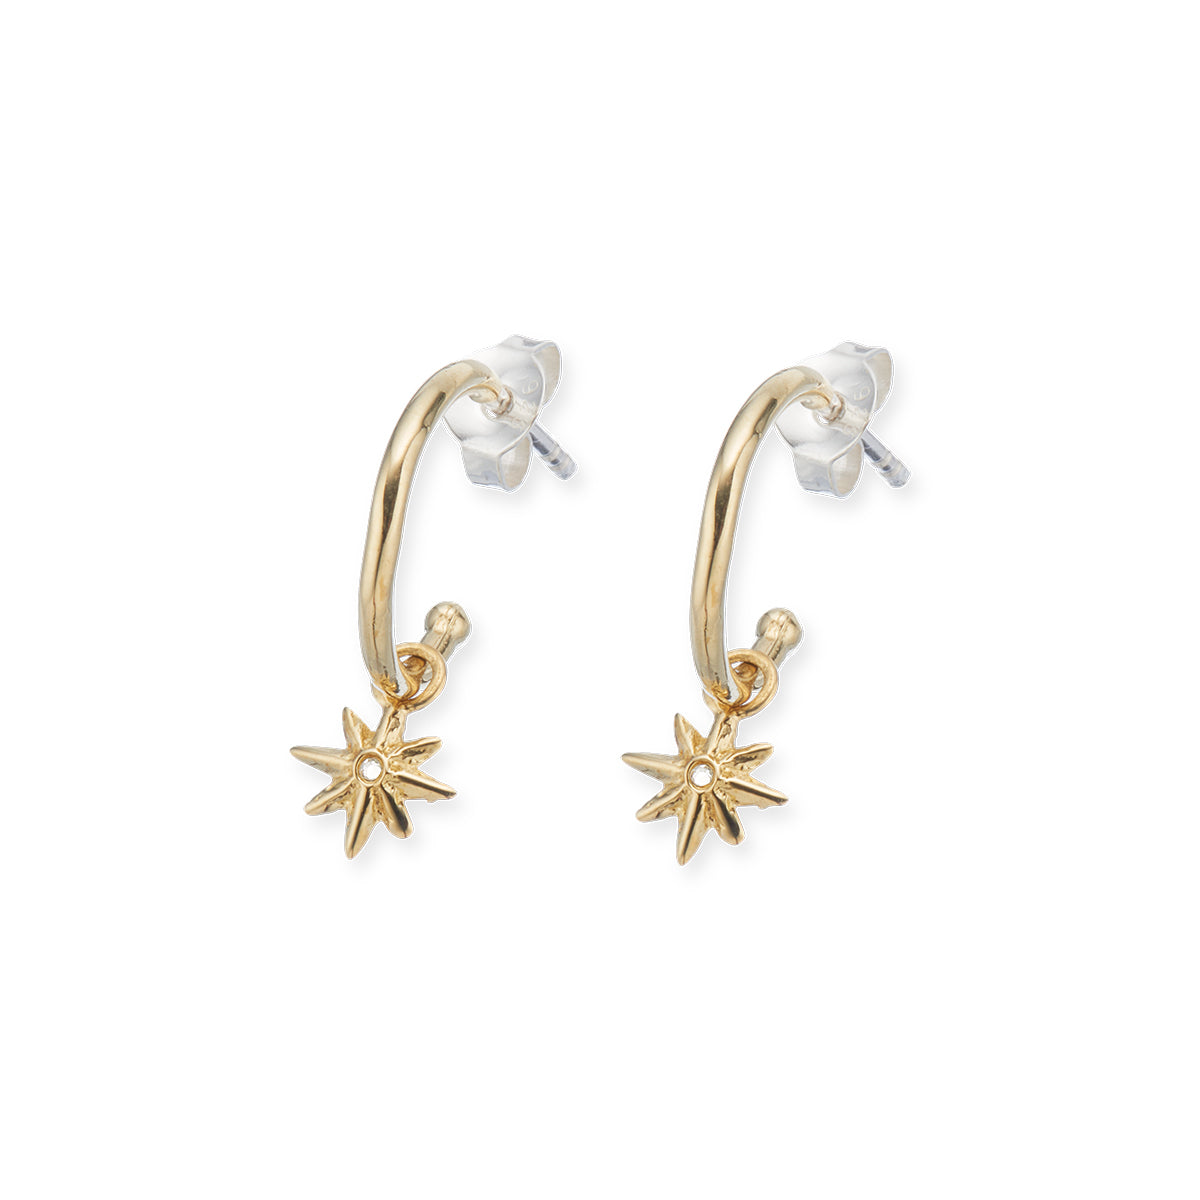 North star hoop earrings